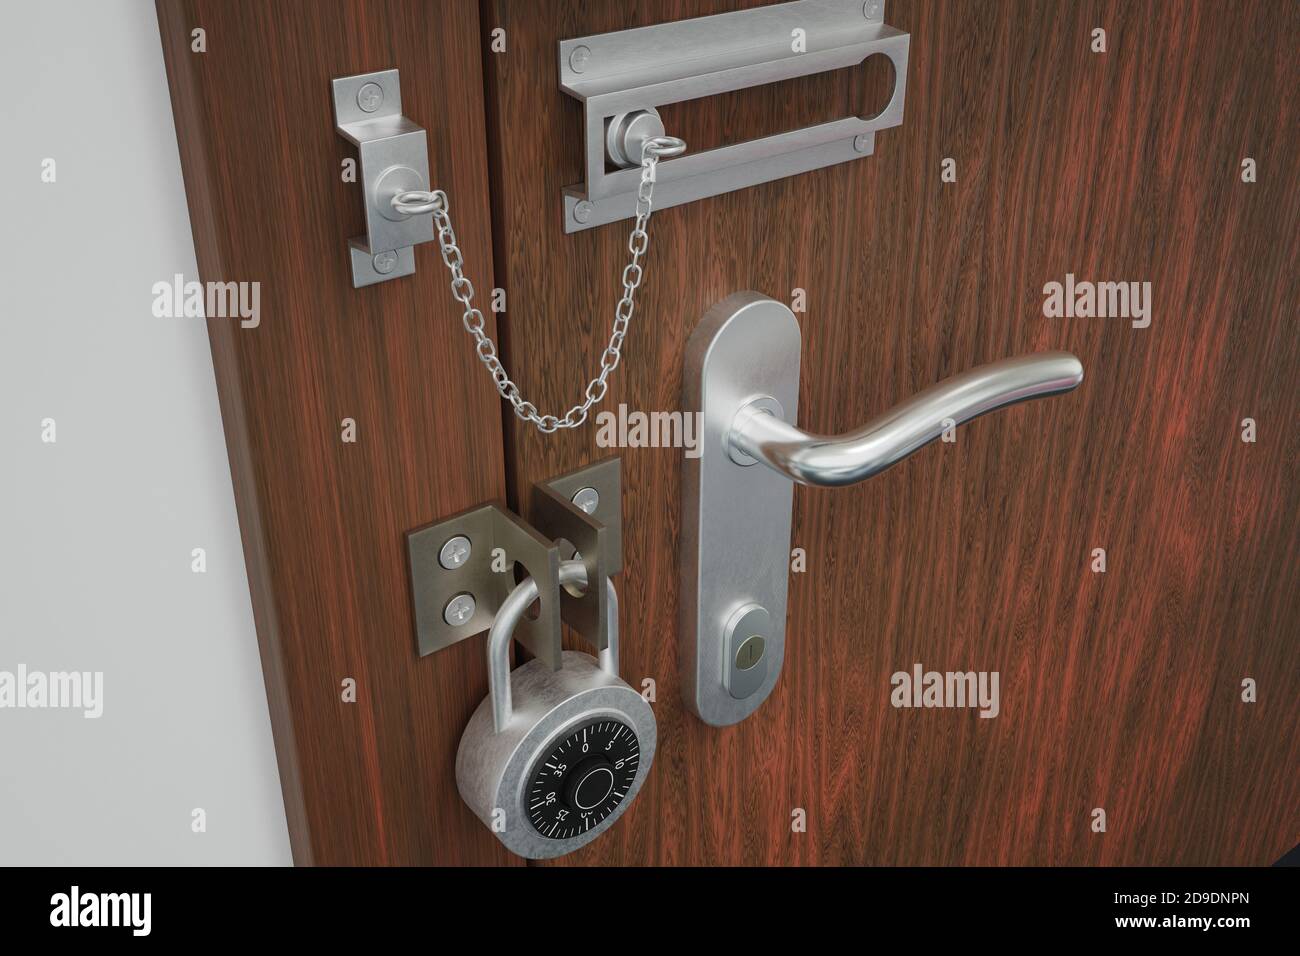 Extrem sichere Tür mit vielen Schlösser, Yale, Schloss und Riegel  Stockfotografie - Alamy